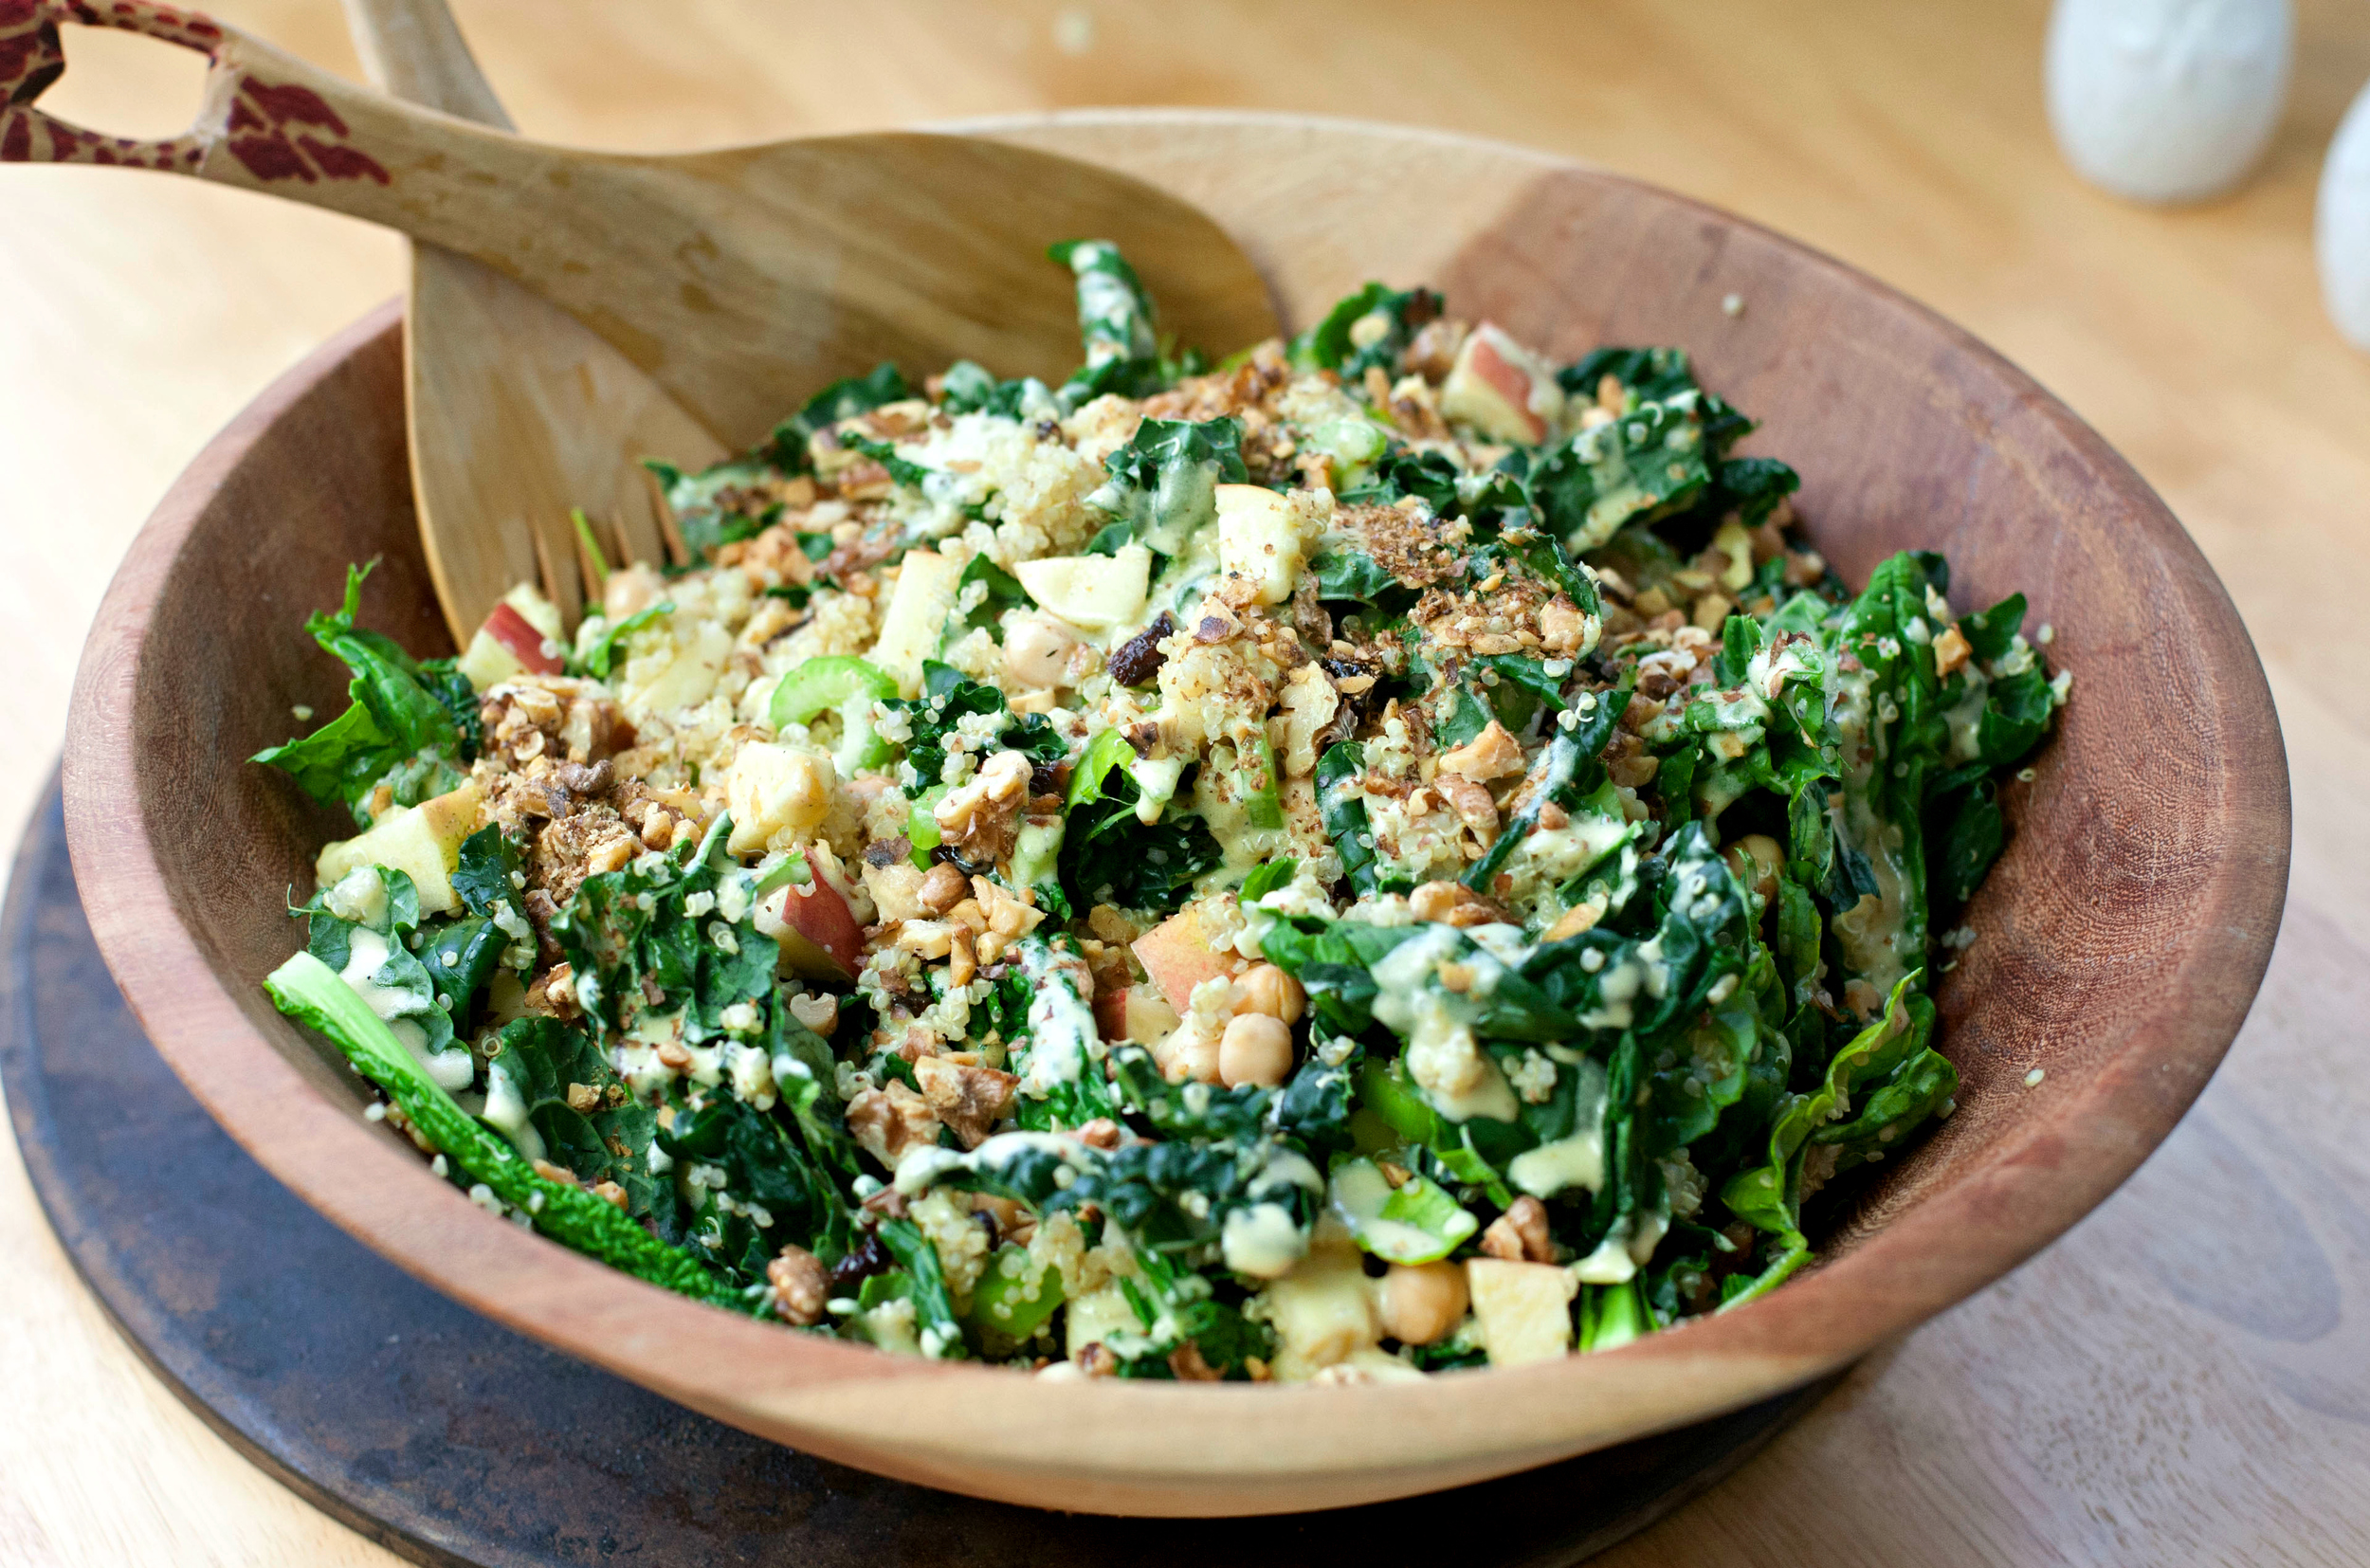 Homemade Healthy Kale Recipes | Homemade Recipes http://homemaderecipes.com/healthy/11-kale-recipes/